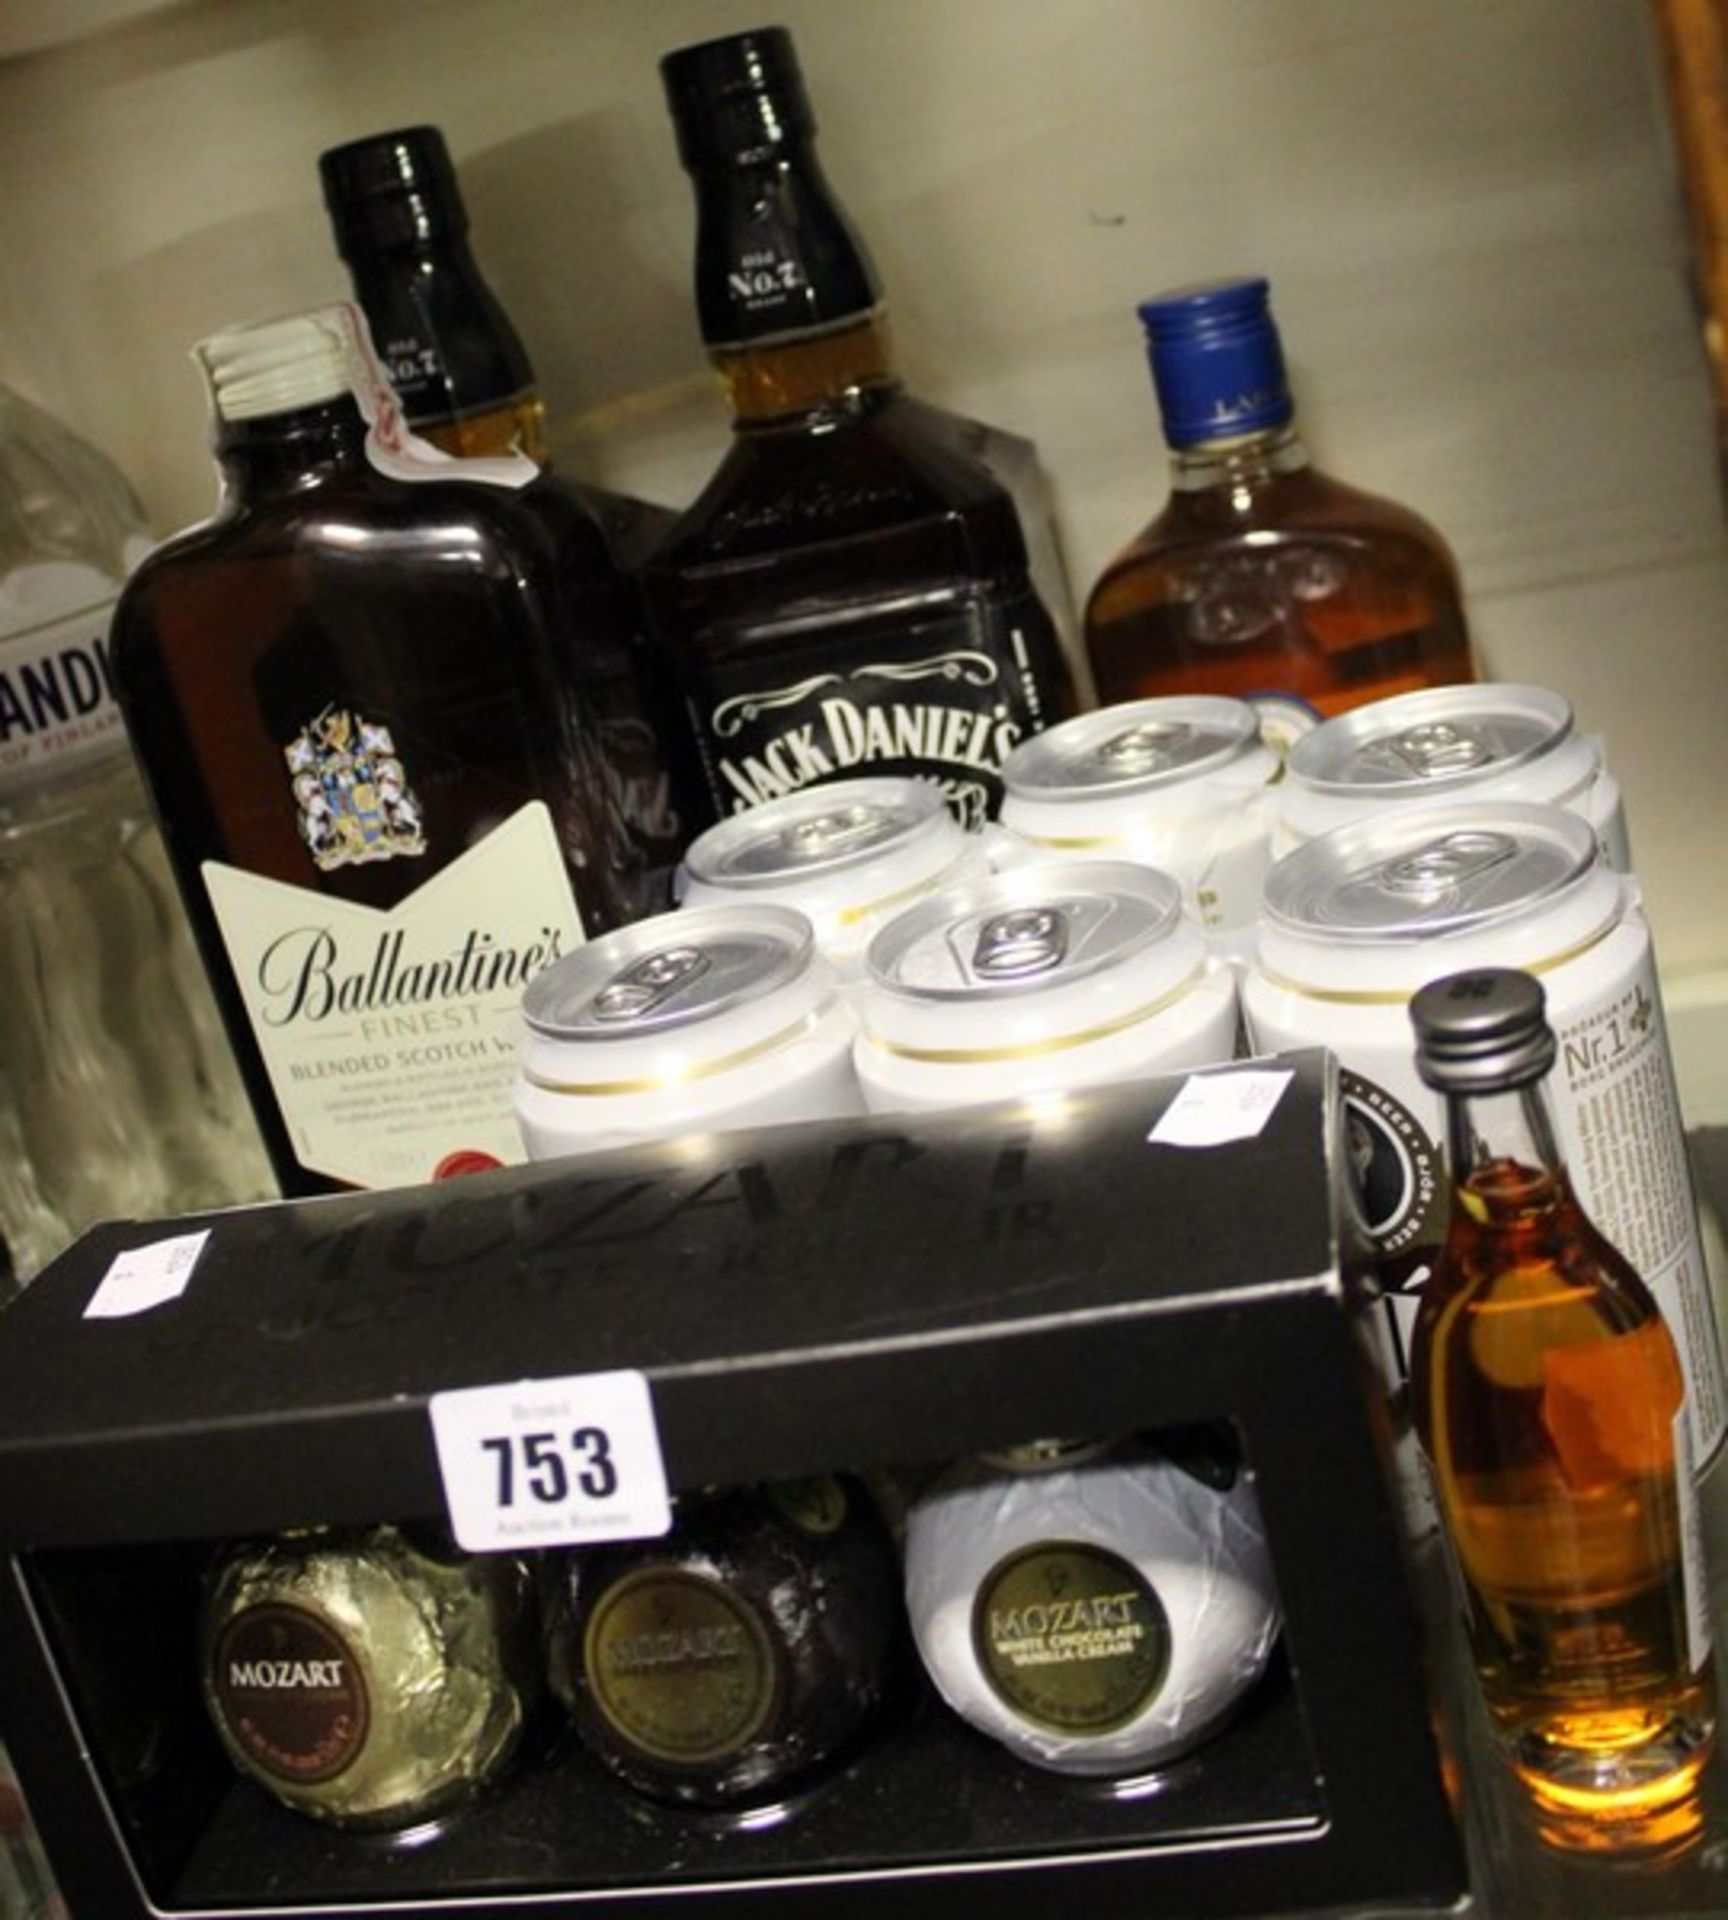 Two Jack Daniels whiskey (2x 1ltr), Ballantine's finest whisky (1ltr), Larsen cognac (500ml), set of